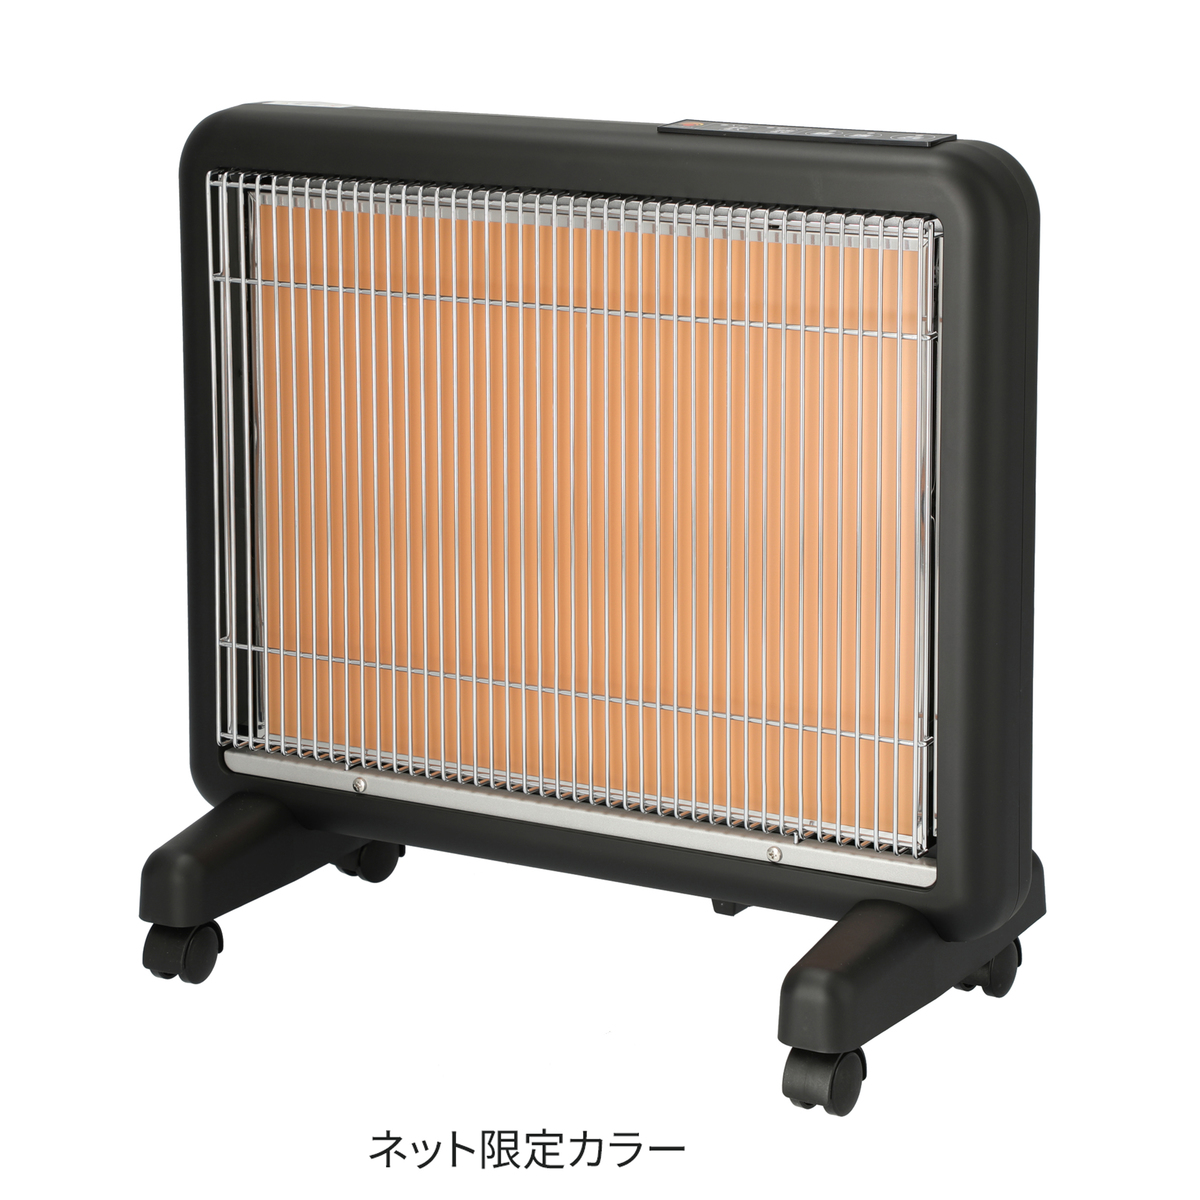 遠赤外線暖房器サンルミエ パーソナル&エコモード+付 サンルミエ - QVC.jp